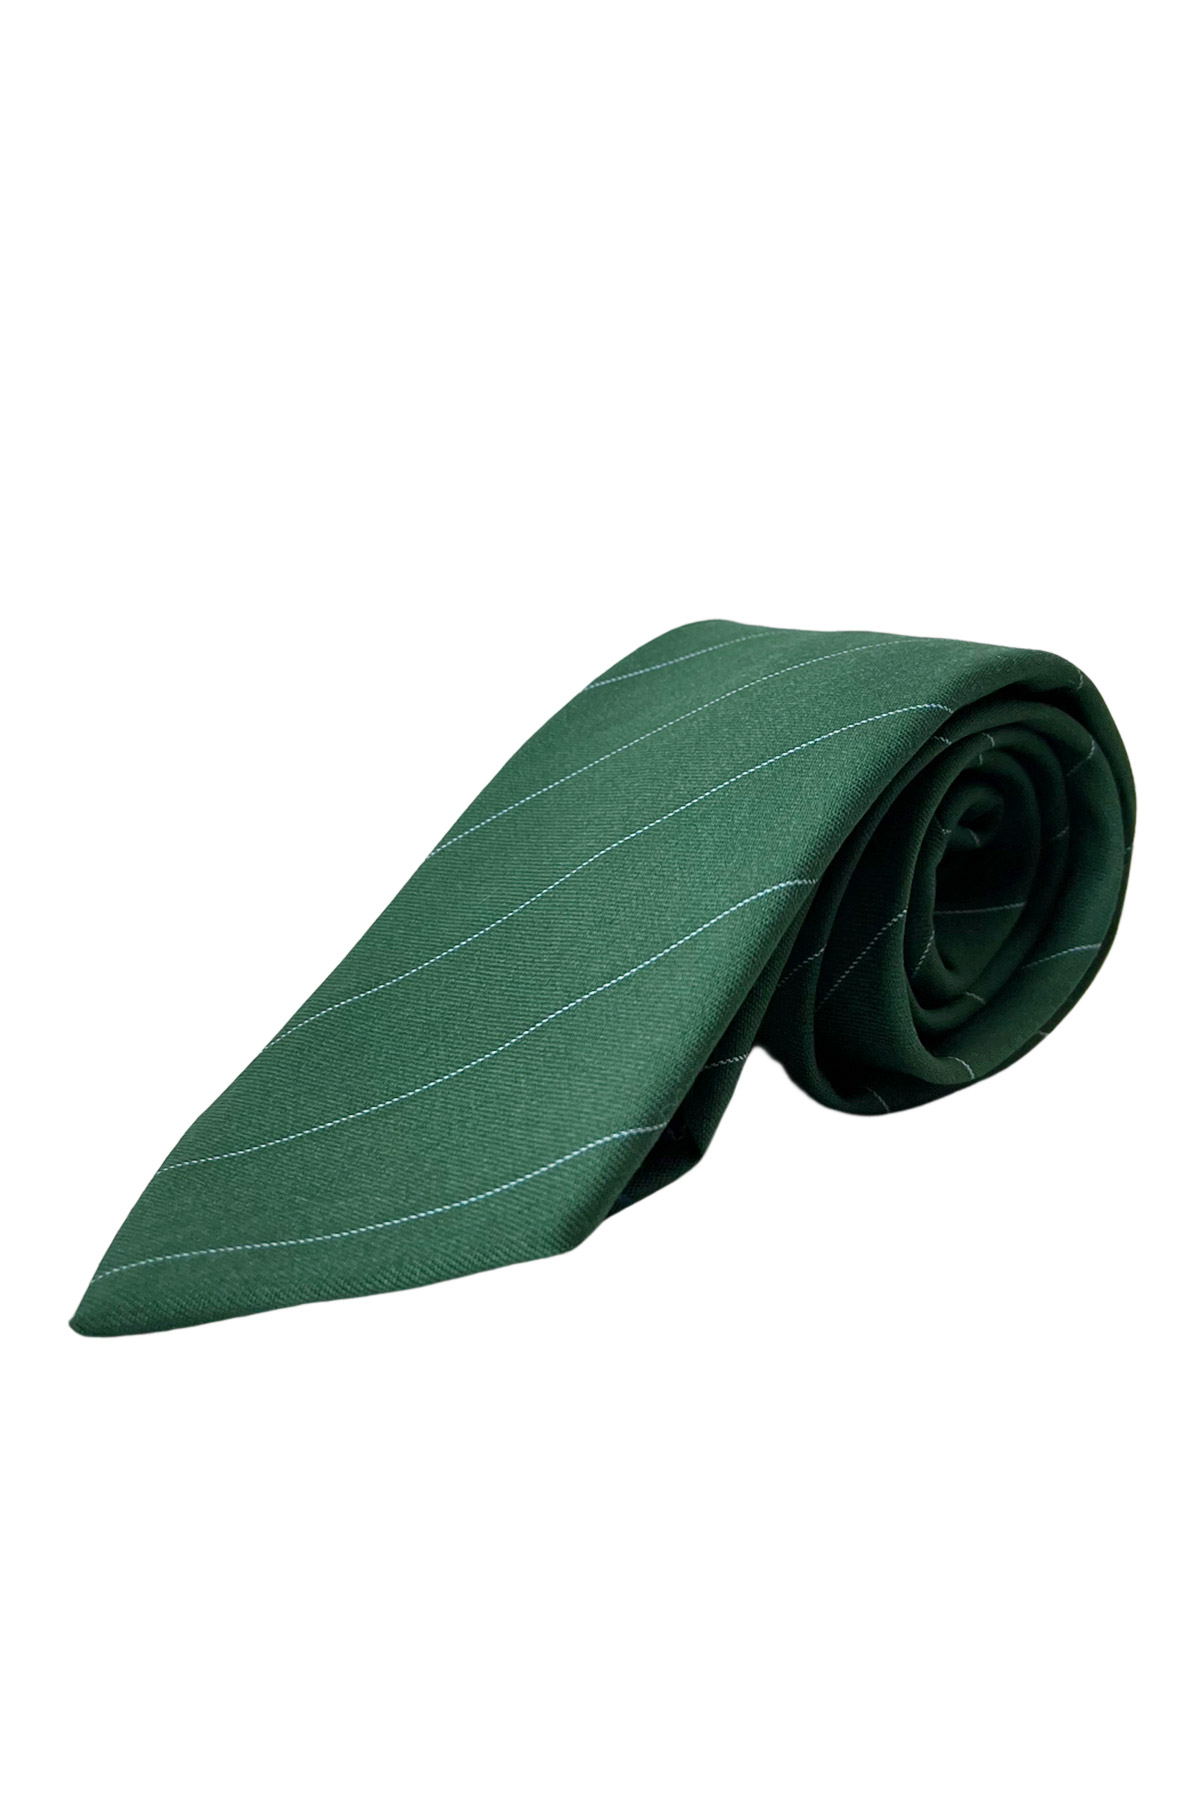 Cravatta uomo verde riga celeste 8cm da cerimonia elegante 100% fresco lana super 130's